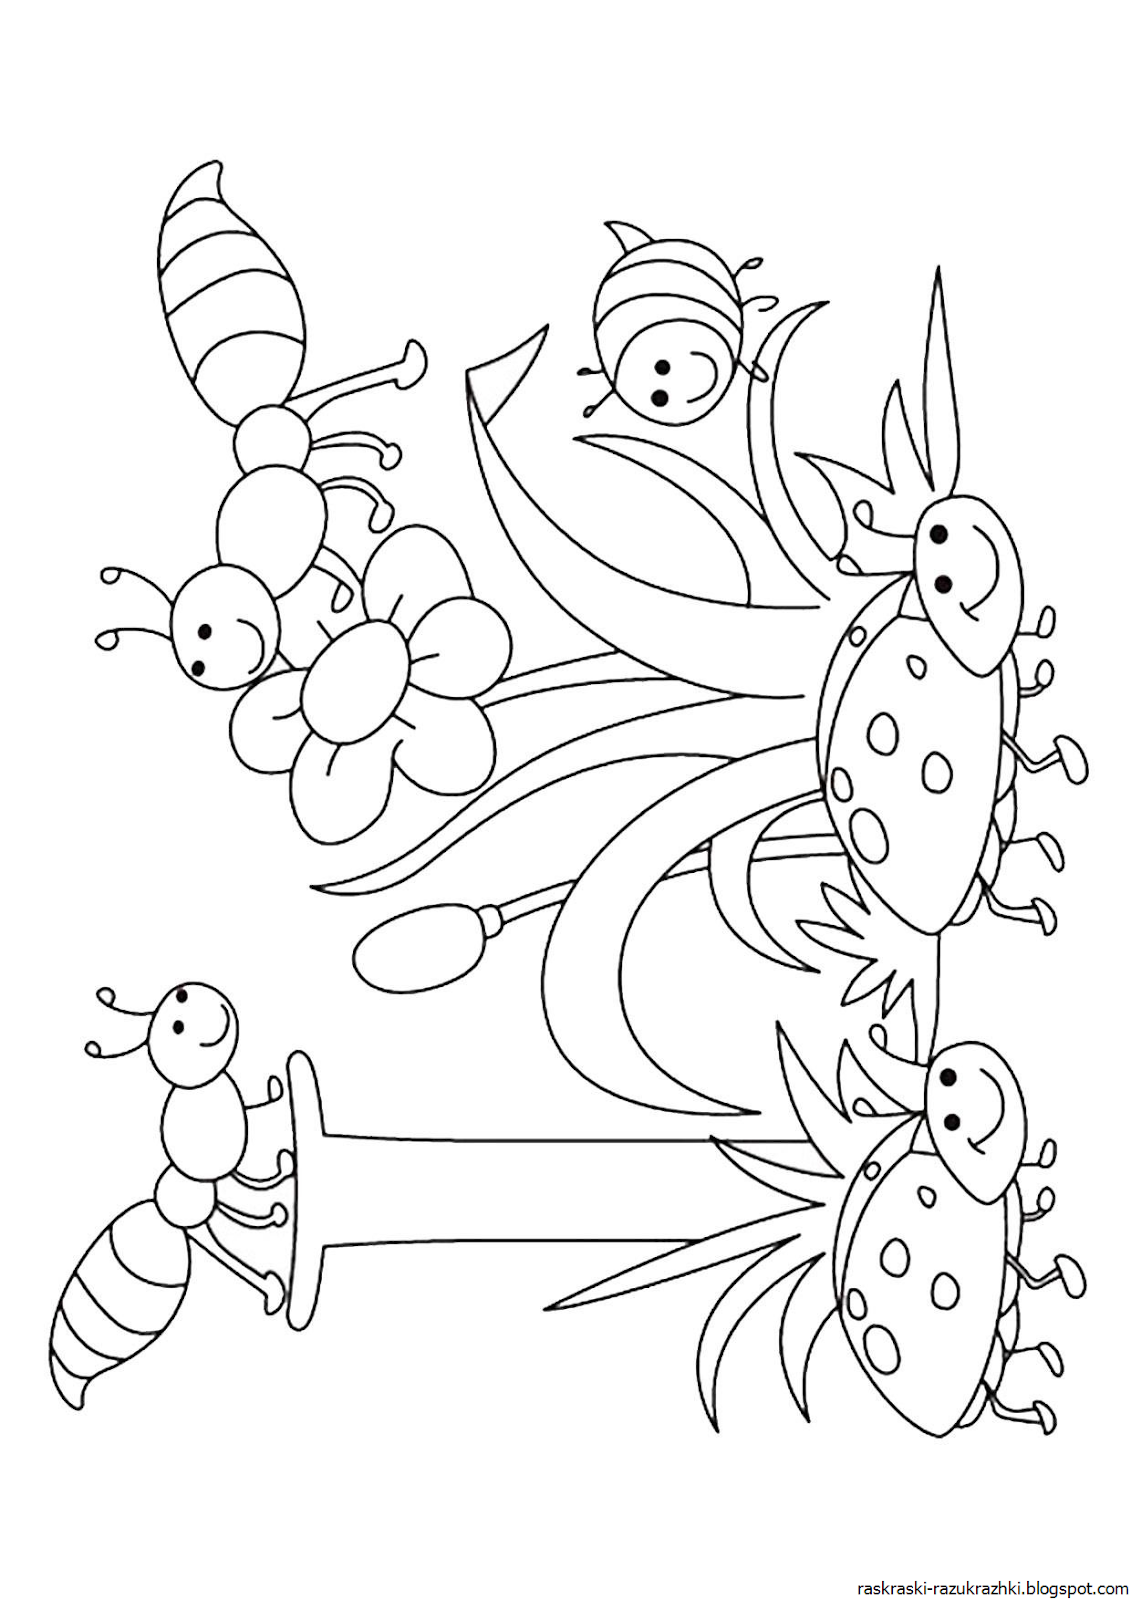 Раскраски насекомые для детей 5 6. Насекомые. Раскраска. Насекомые раскраска для детей. Насекомые для раскрашивания детям. Раскраска насекомые для дошкольников.